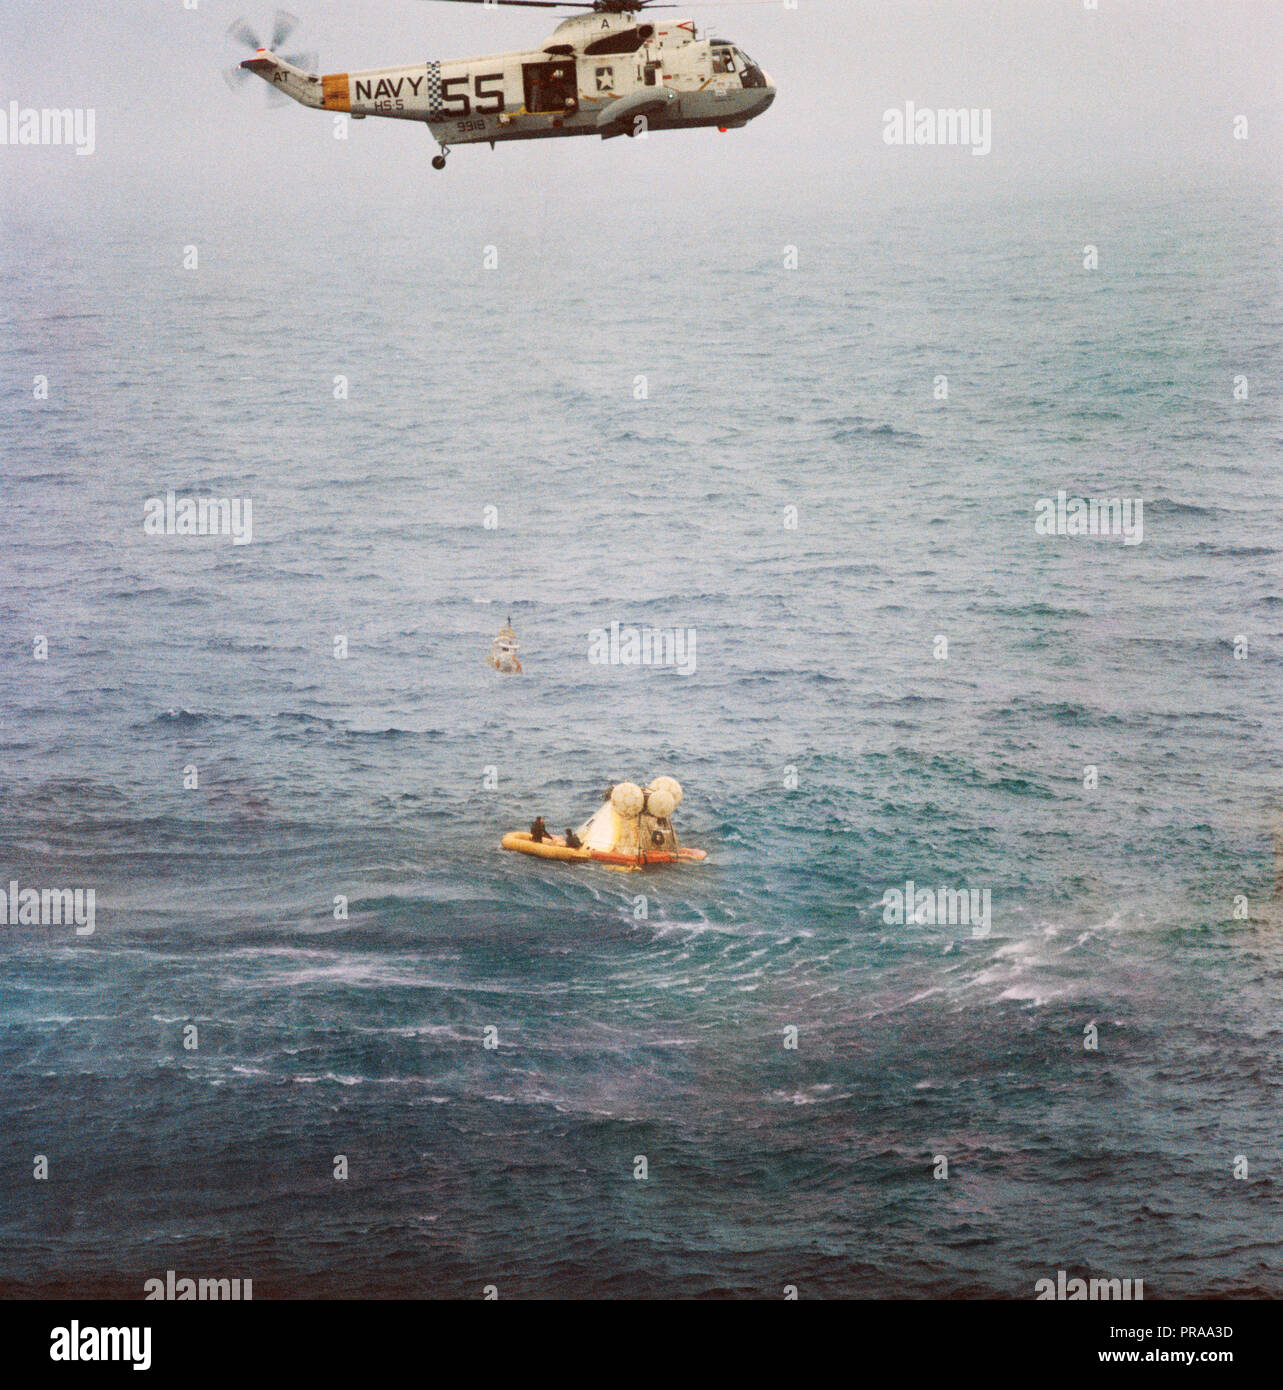 Un membro dell'Apollo 7 equipaggio è issato fino al ripristino di un elicottero a bordo della USS Essex durante le operazioni di ripristino. L' Apollo 7 veicoli spaziali spruzzato verso il basso a 7:11 a.m., Ottobre 22, 1968, circa 200 miglia nautiche a sud-sud-ovest di Bermuda. Photo credit: la NASA Foto Stock